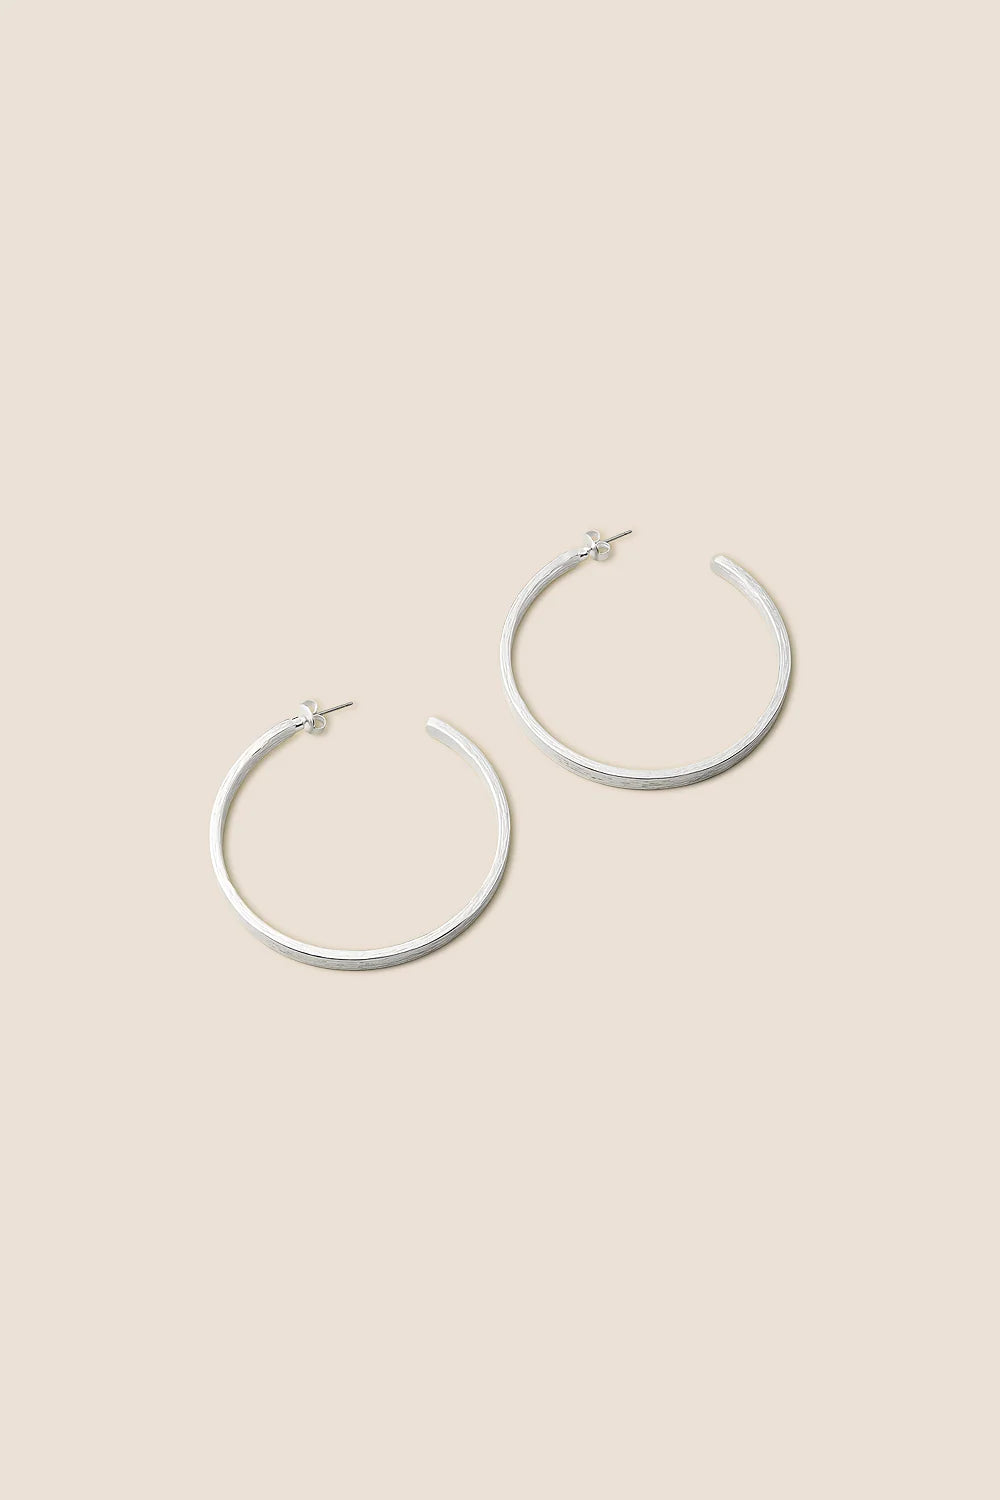 Octavia Silver Earrings